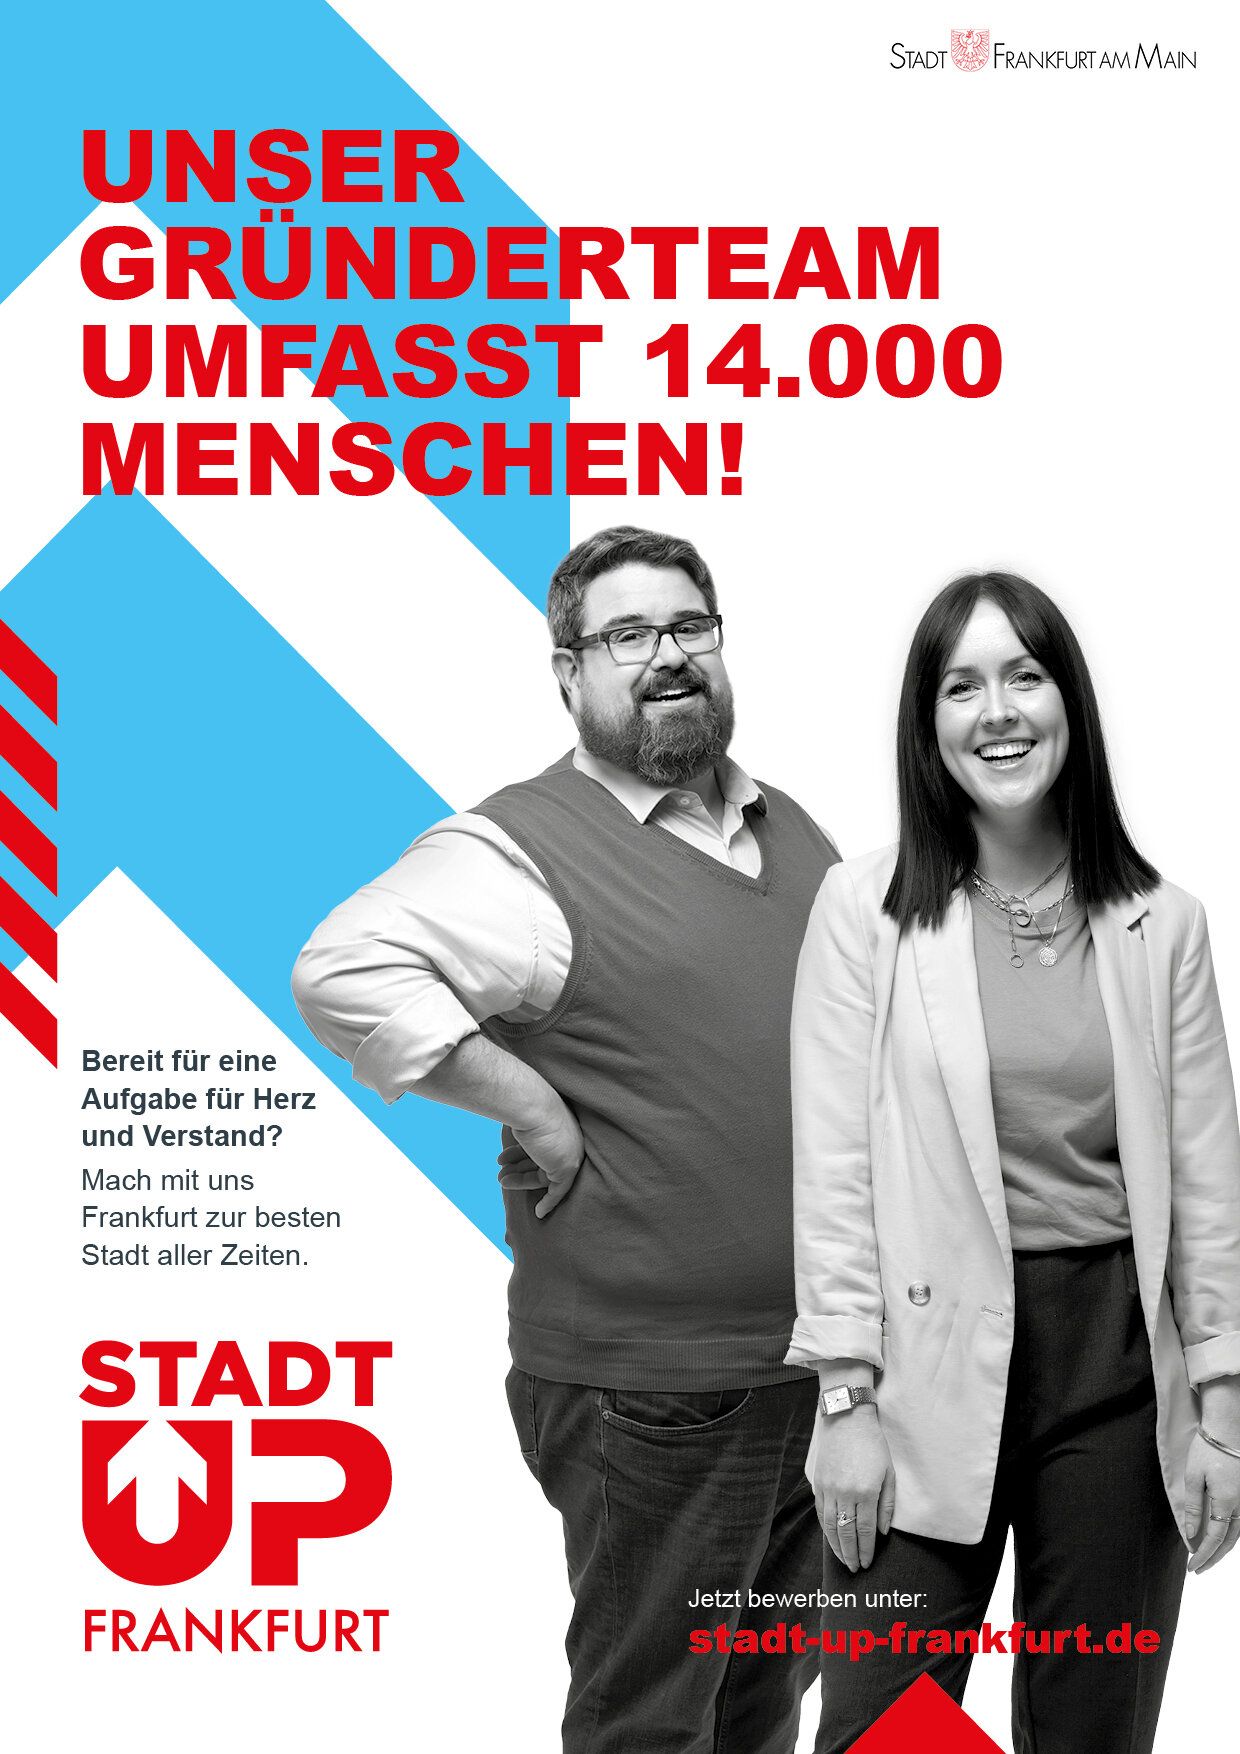 Plakat mit dem Text "Unser Gründerteam umfasst 14.000 Menschen!" und zwei Mitarbeitern der Stadt Frankfurt.